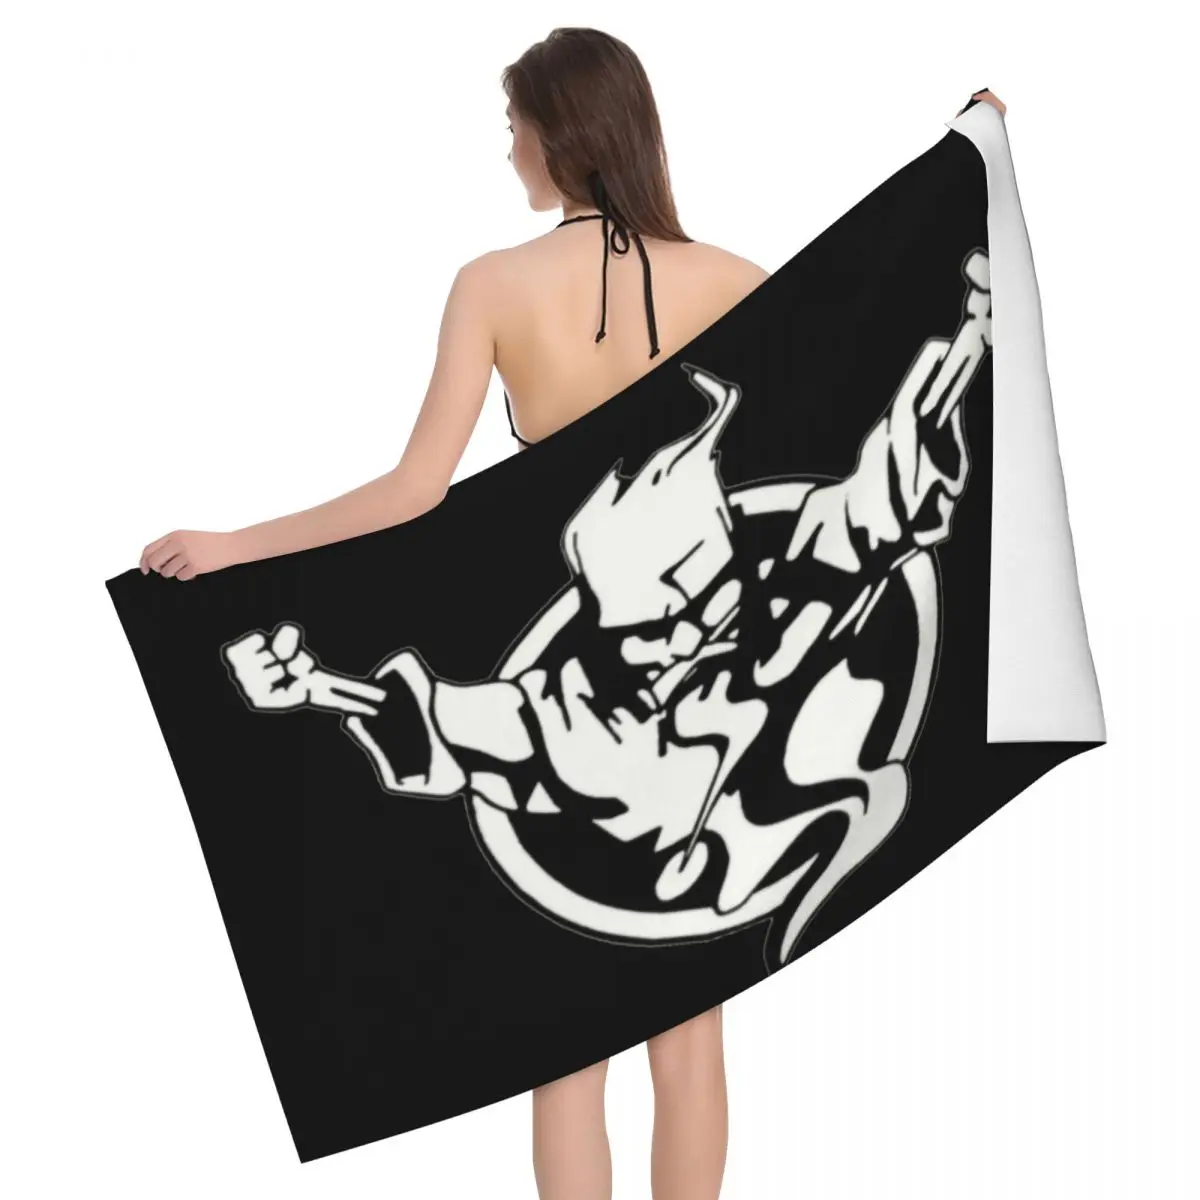 

Пляжное банное полотенце из микрофибры с логотипом музыкального фестиваля Thunderdome, быстросохнущее, твердый материал, полотенце для душа и ба...